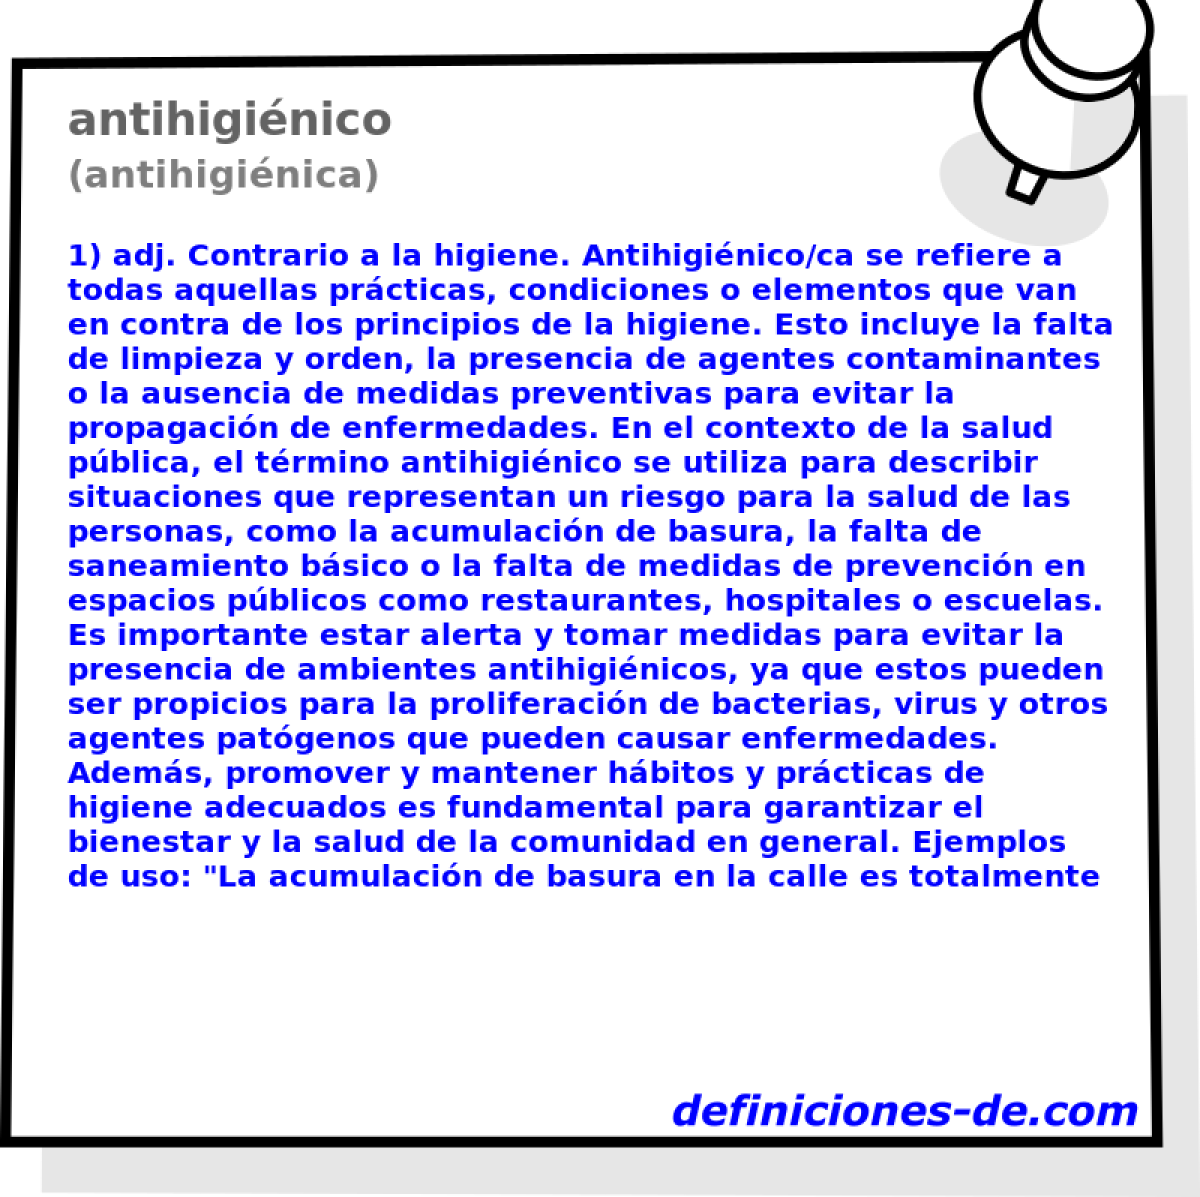 antihiginico (antihiginica)